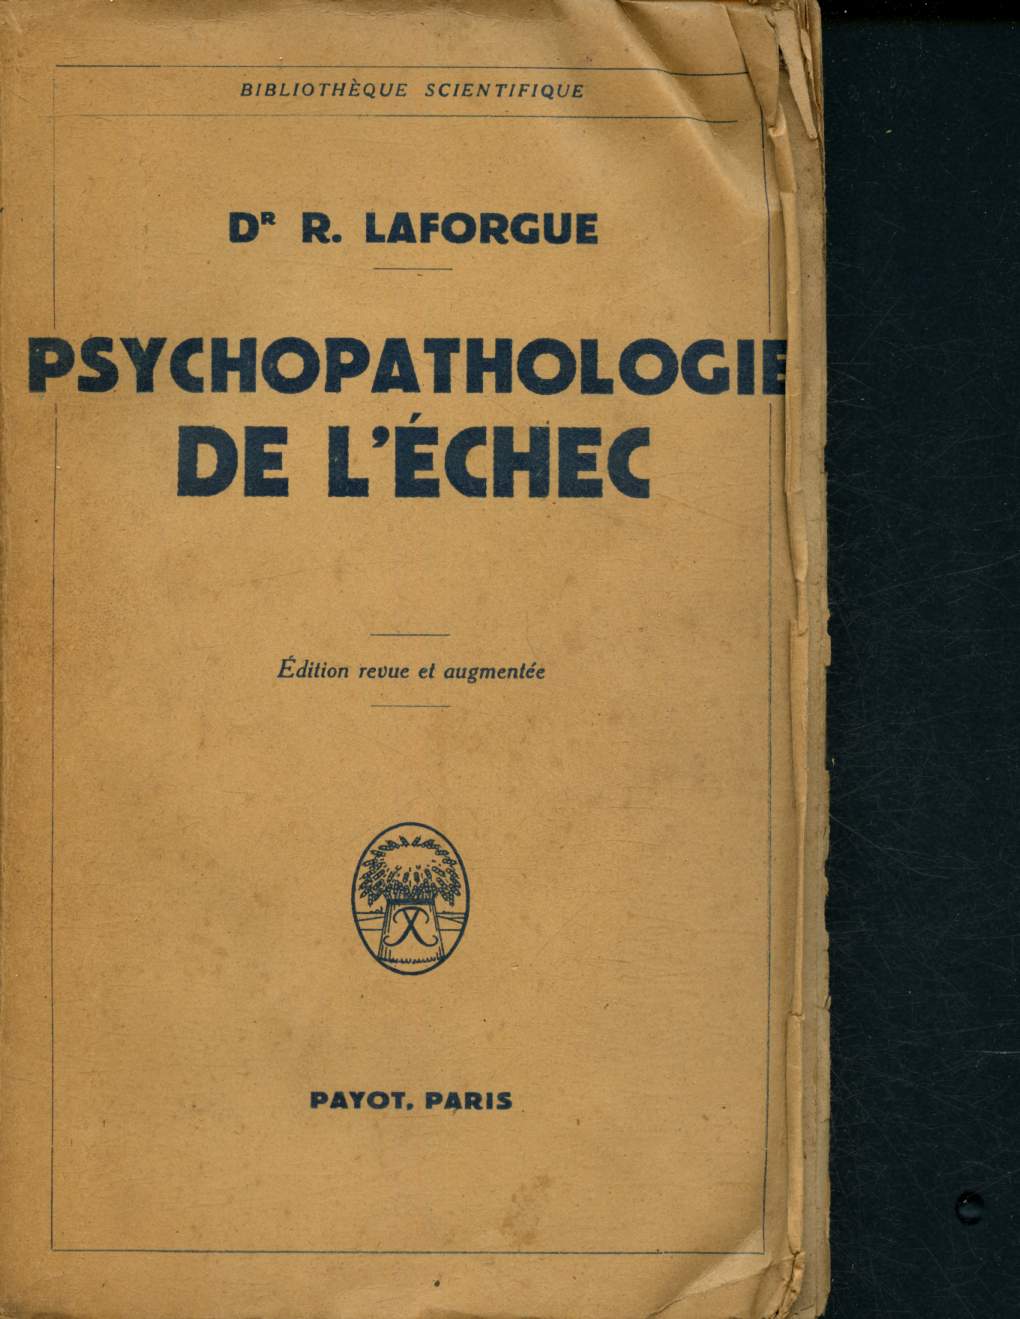 Psychopathologie de l'chec